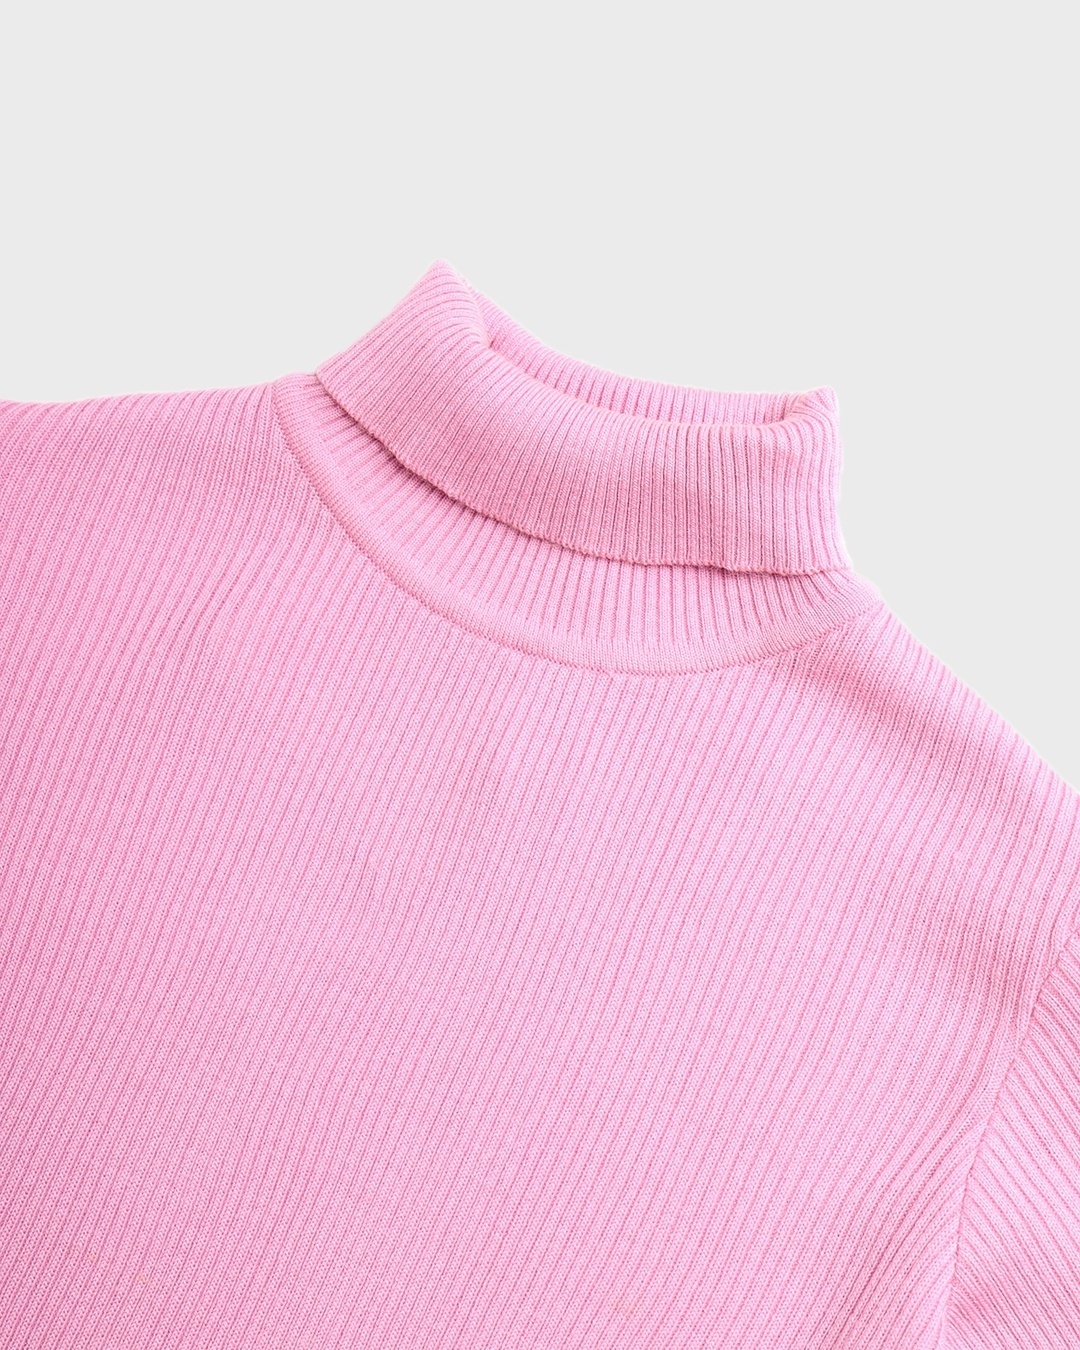 Shop Women's Pink High Neck Sweater